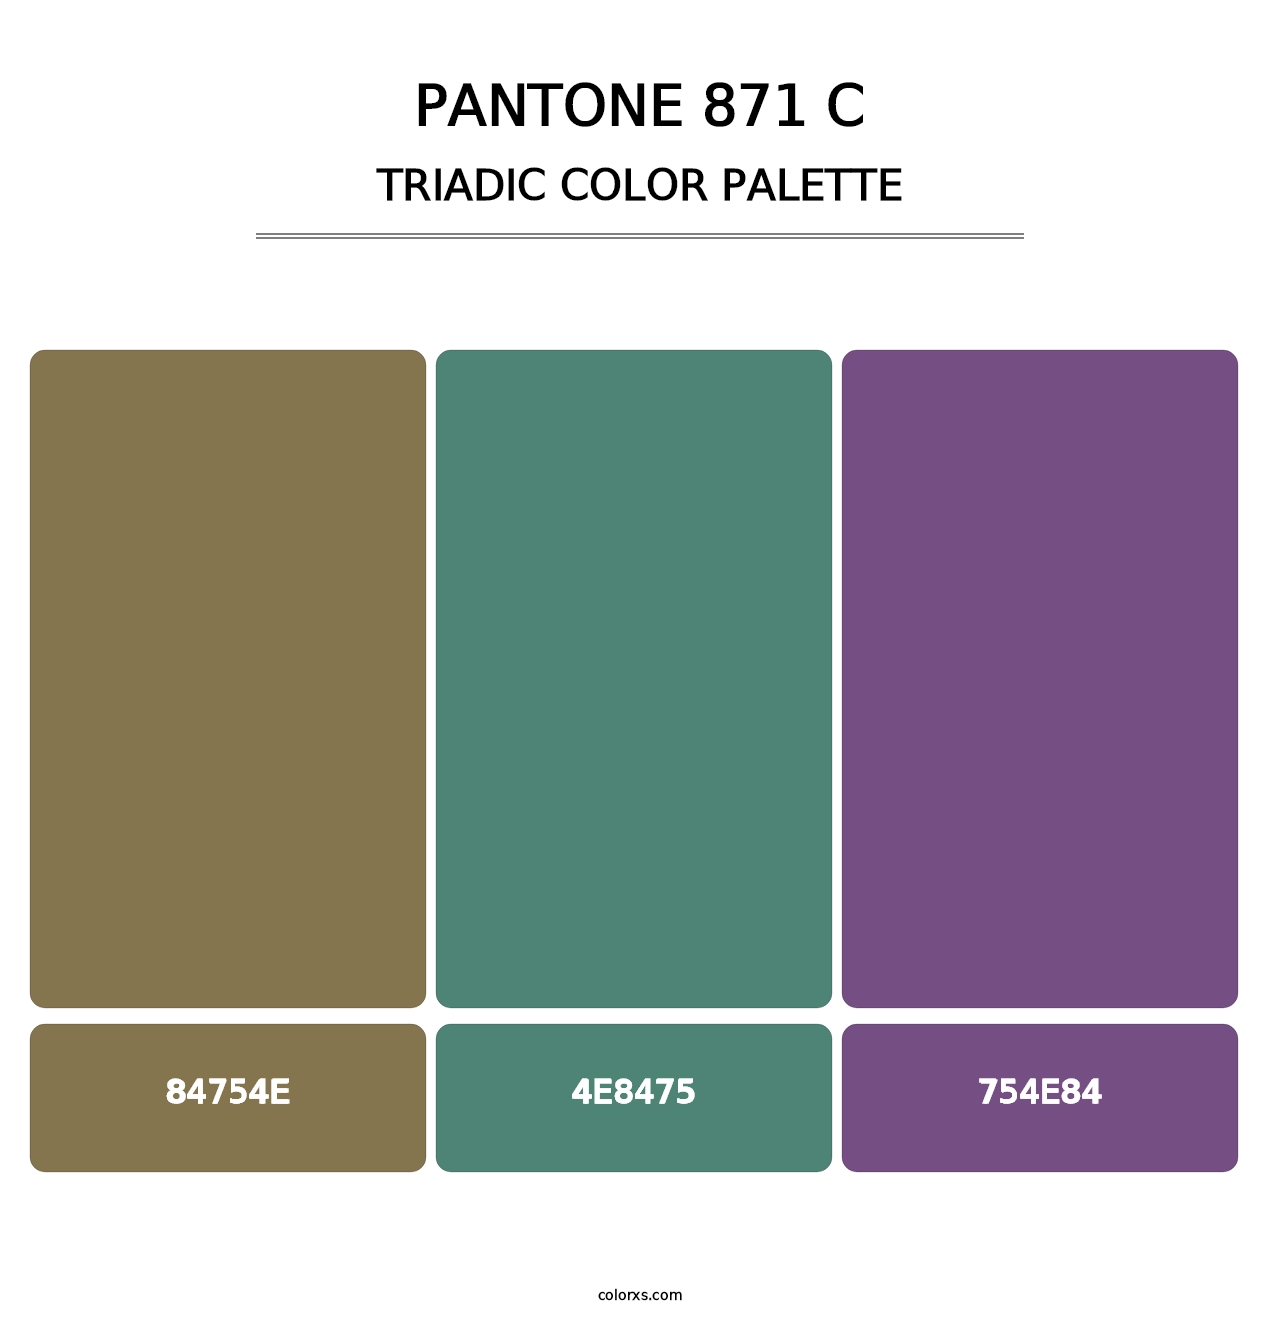 PANTONE 871 C - Triadic Color Palette